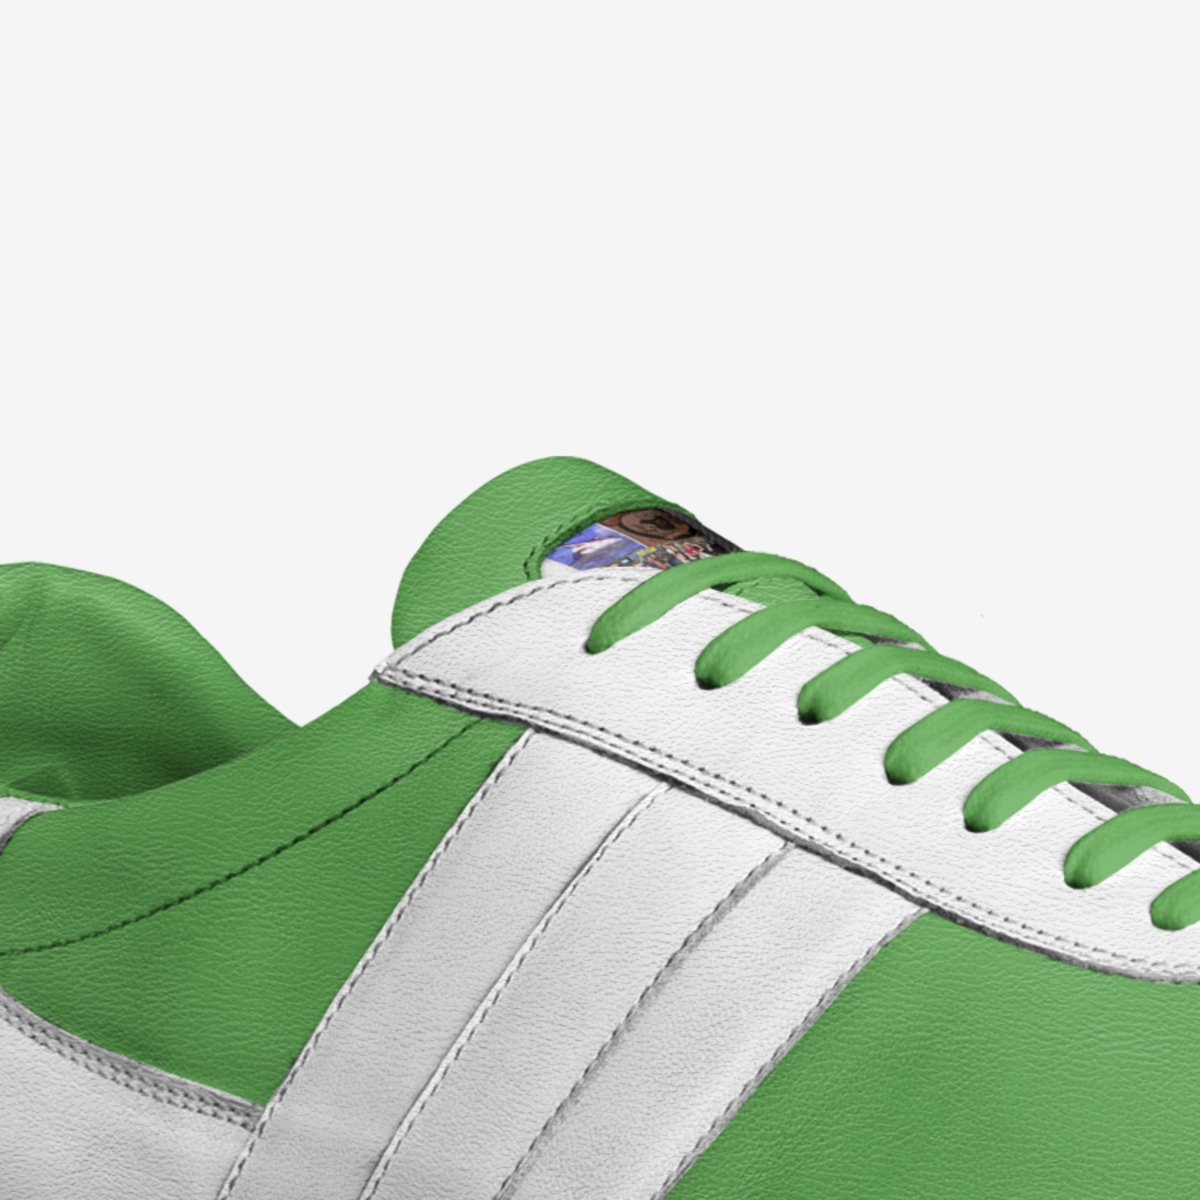 Tim Siebert | A Custom Shoe concept by Tim Siebert